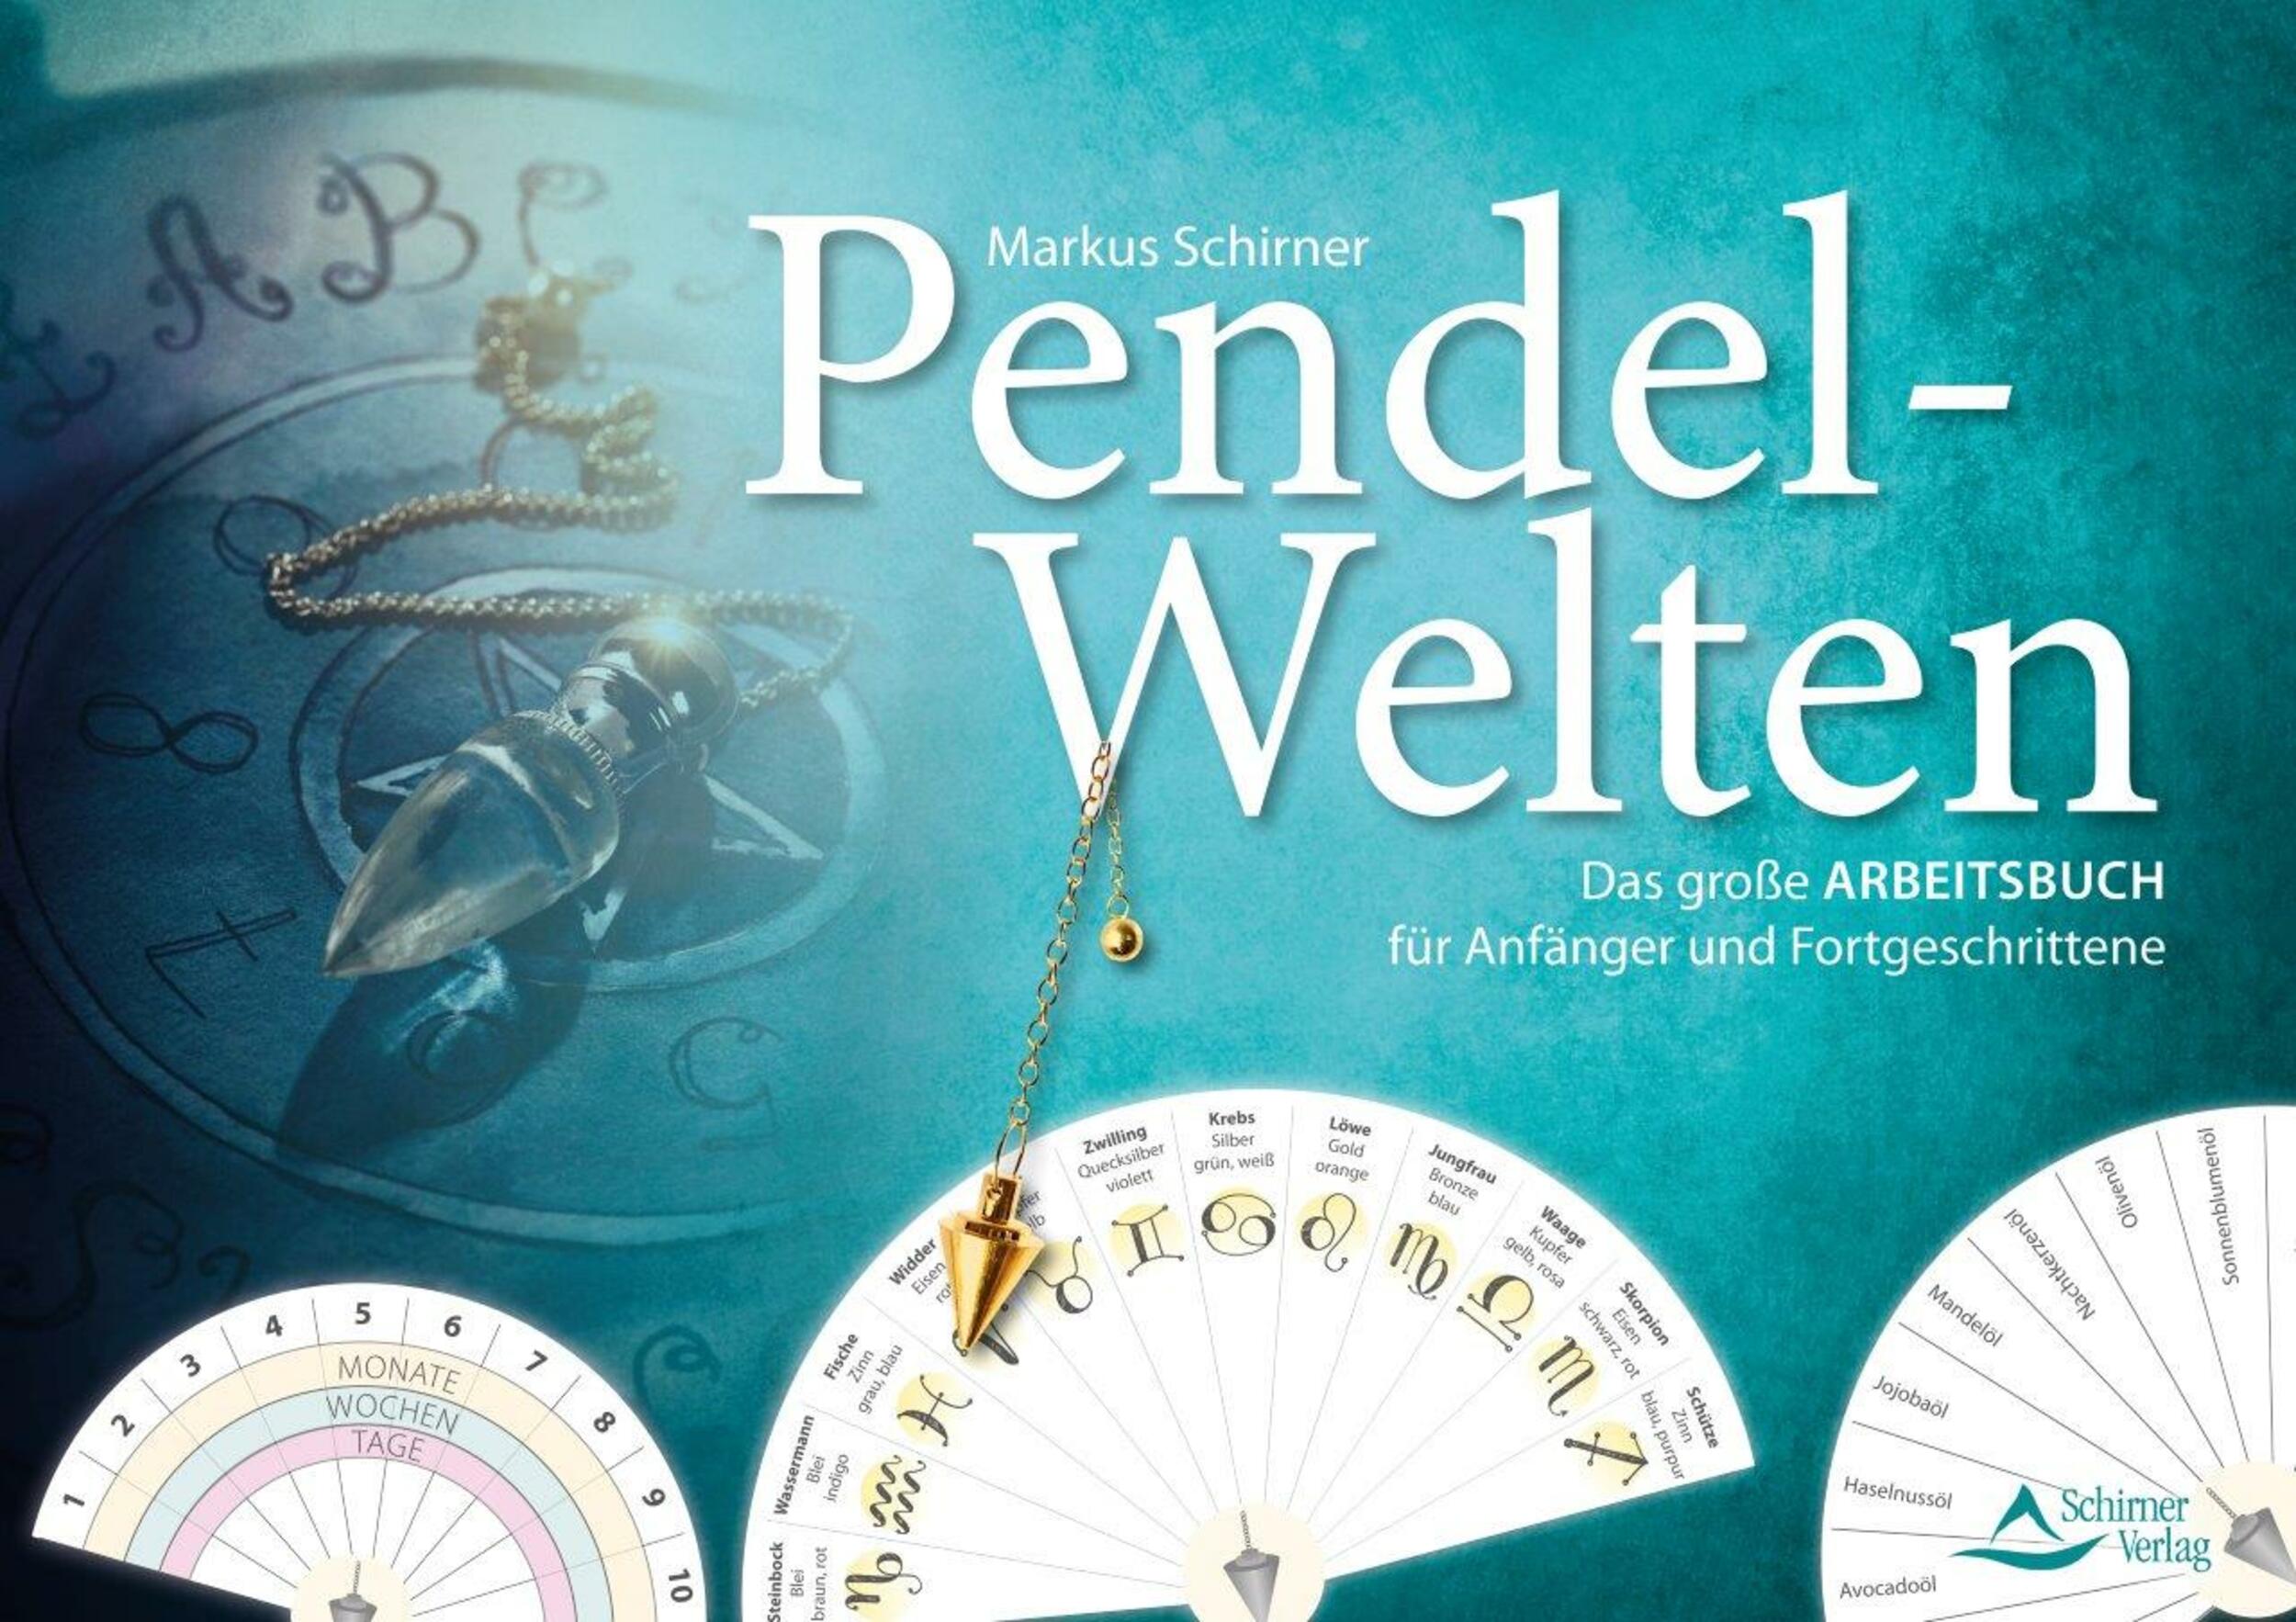 Pendel-Welten in Paperback-Umschlag